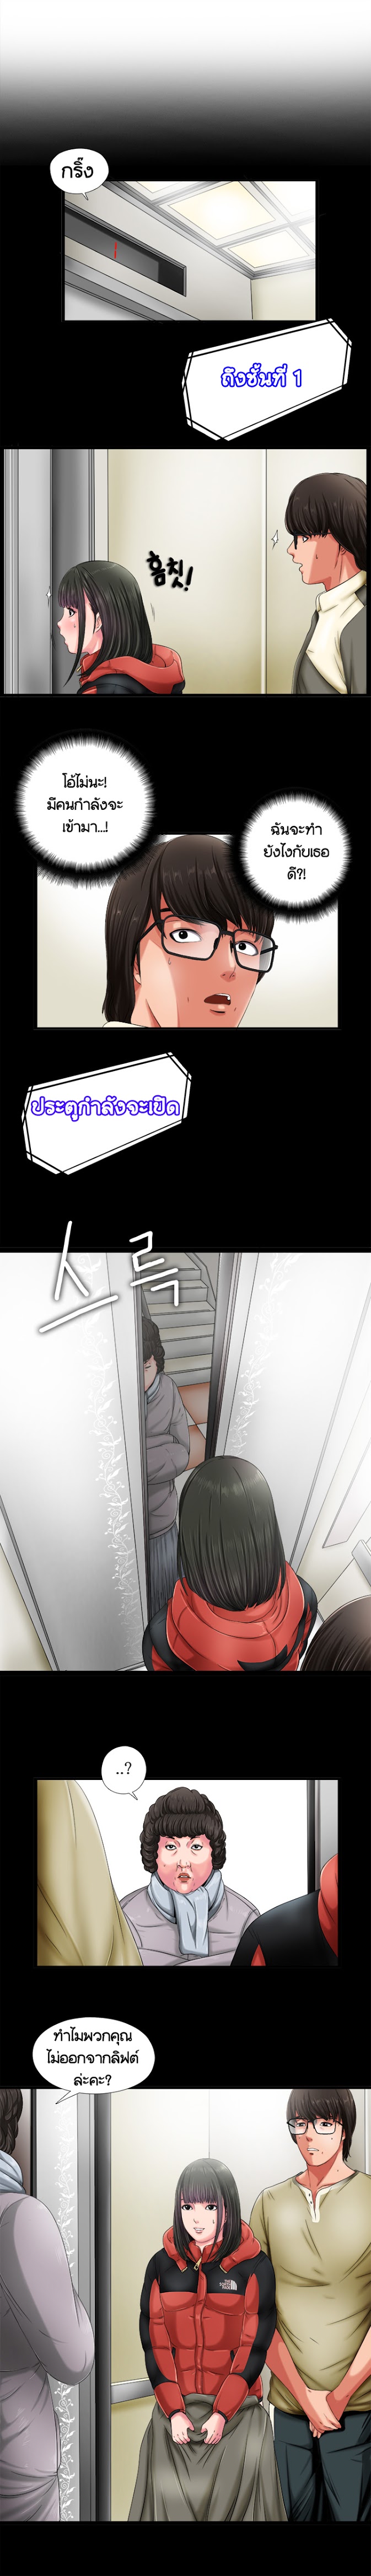 Girl Next Door - หน้า 4